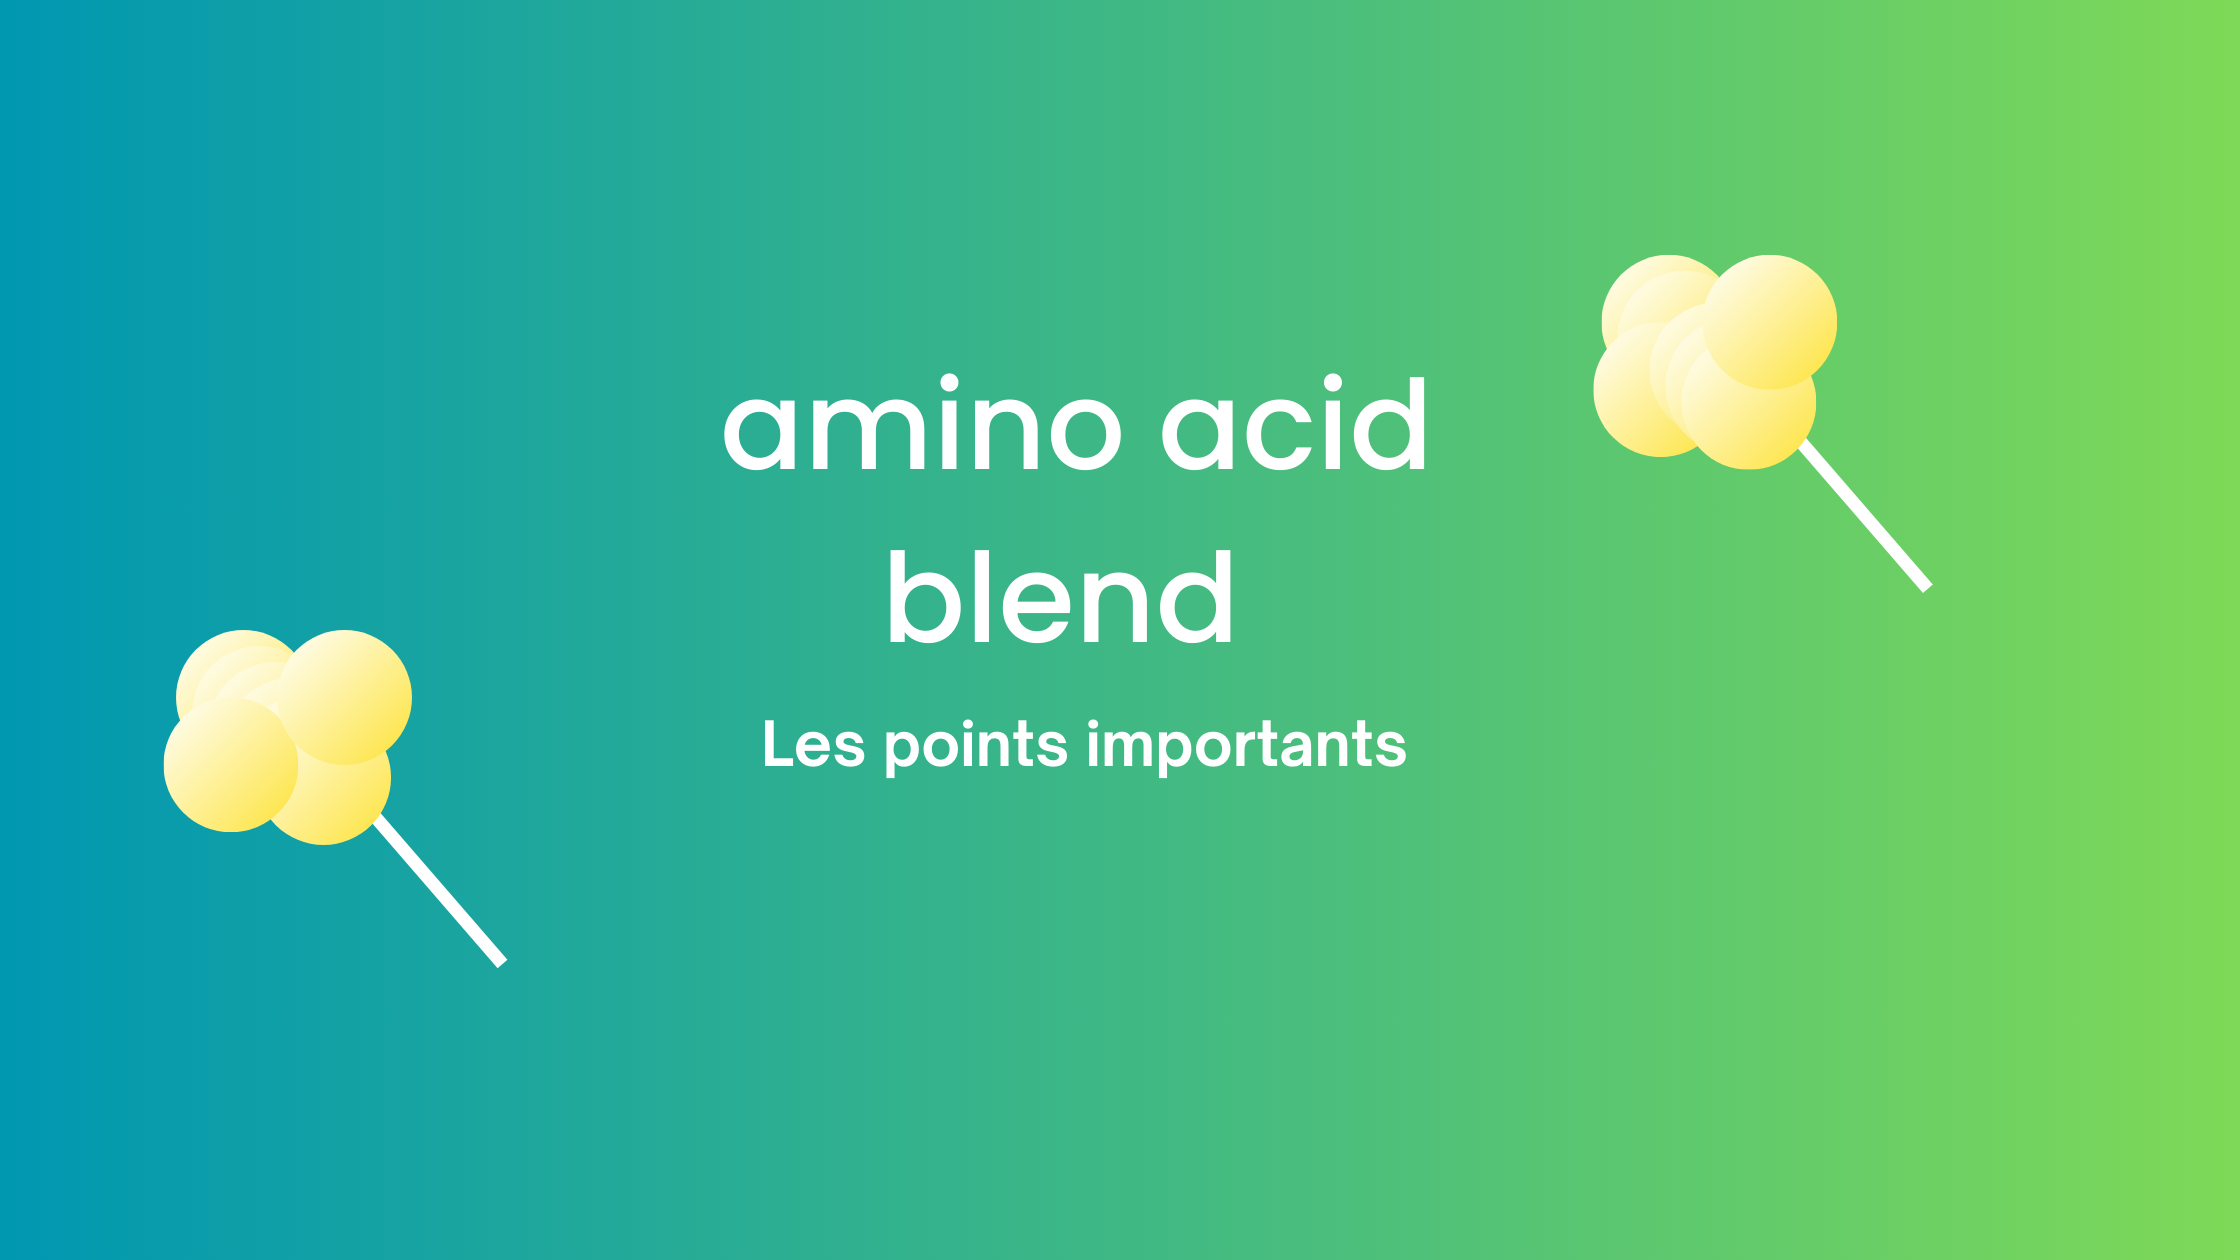 amino acid blend | Les points importants